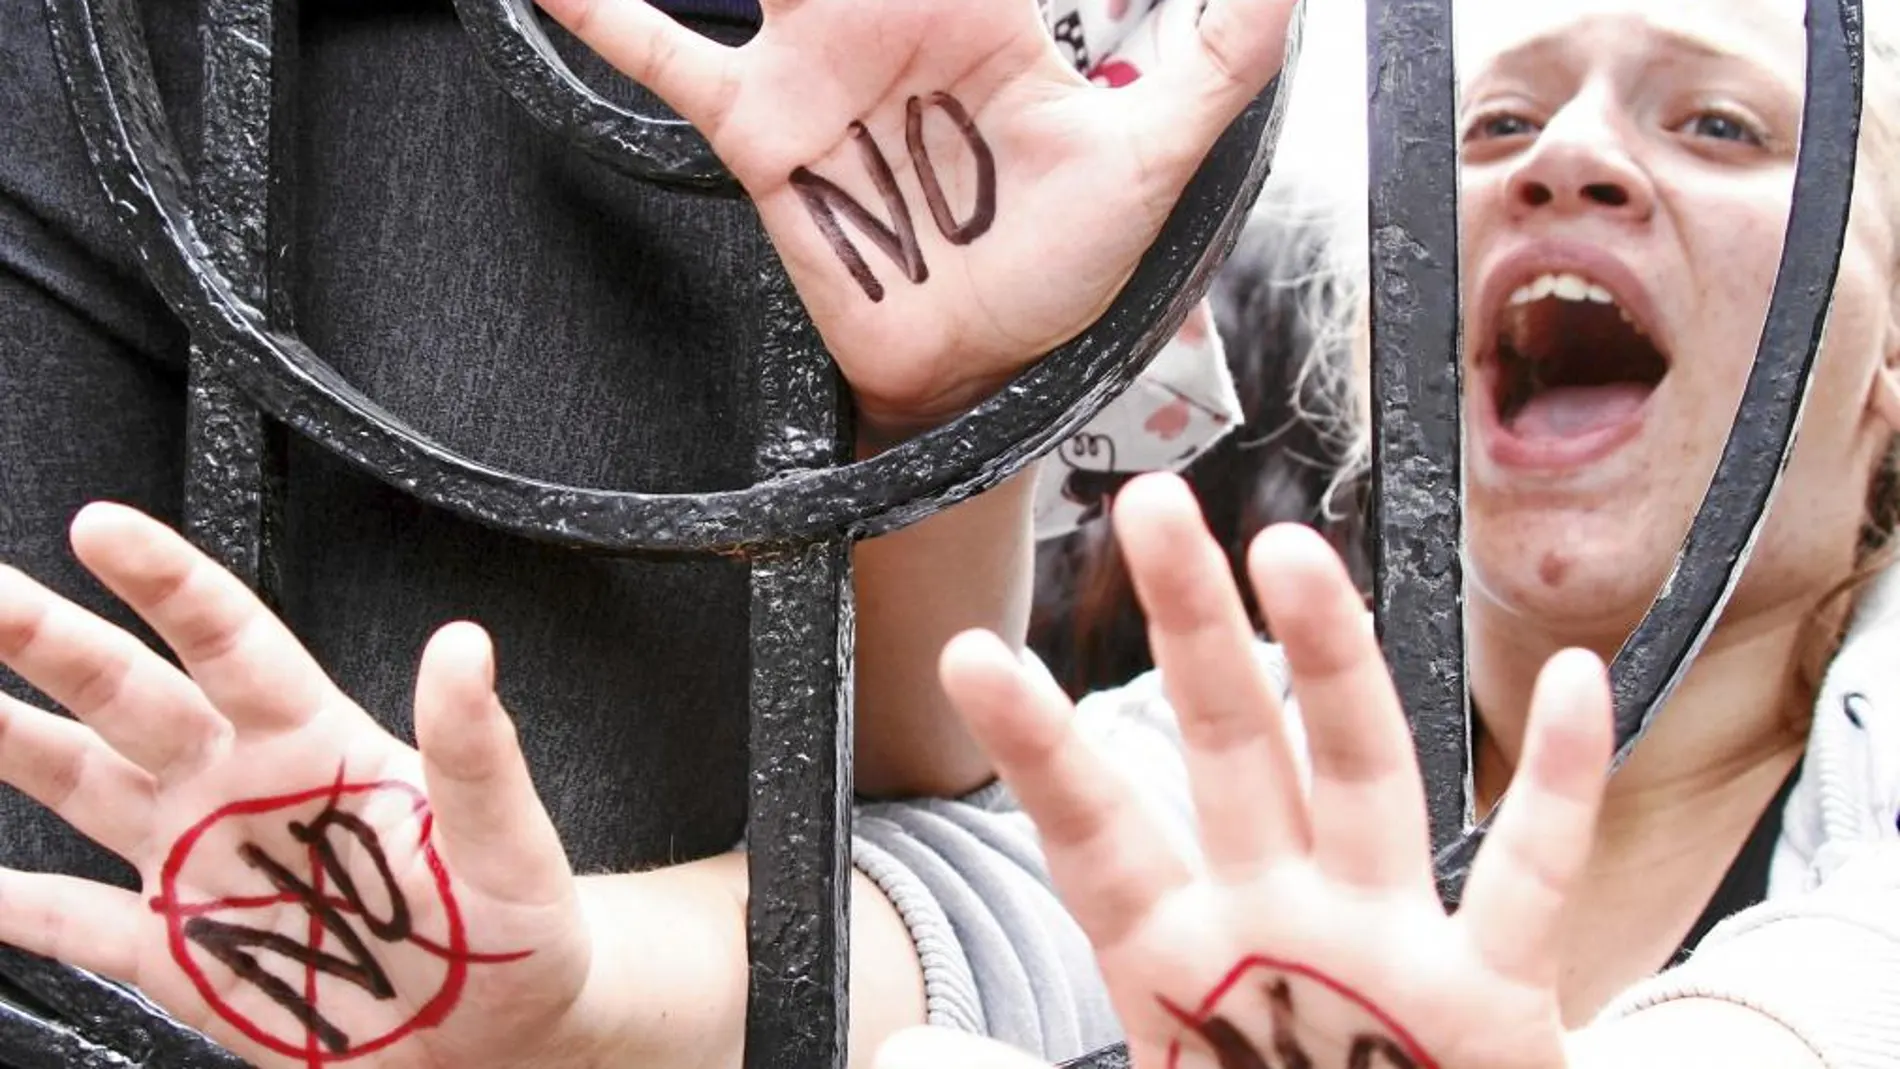 Los estudiantes chipriotas dijeron «no» a la troika en las calles de Nicosia